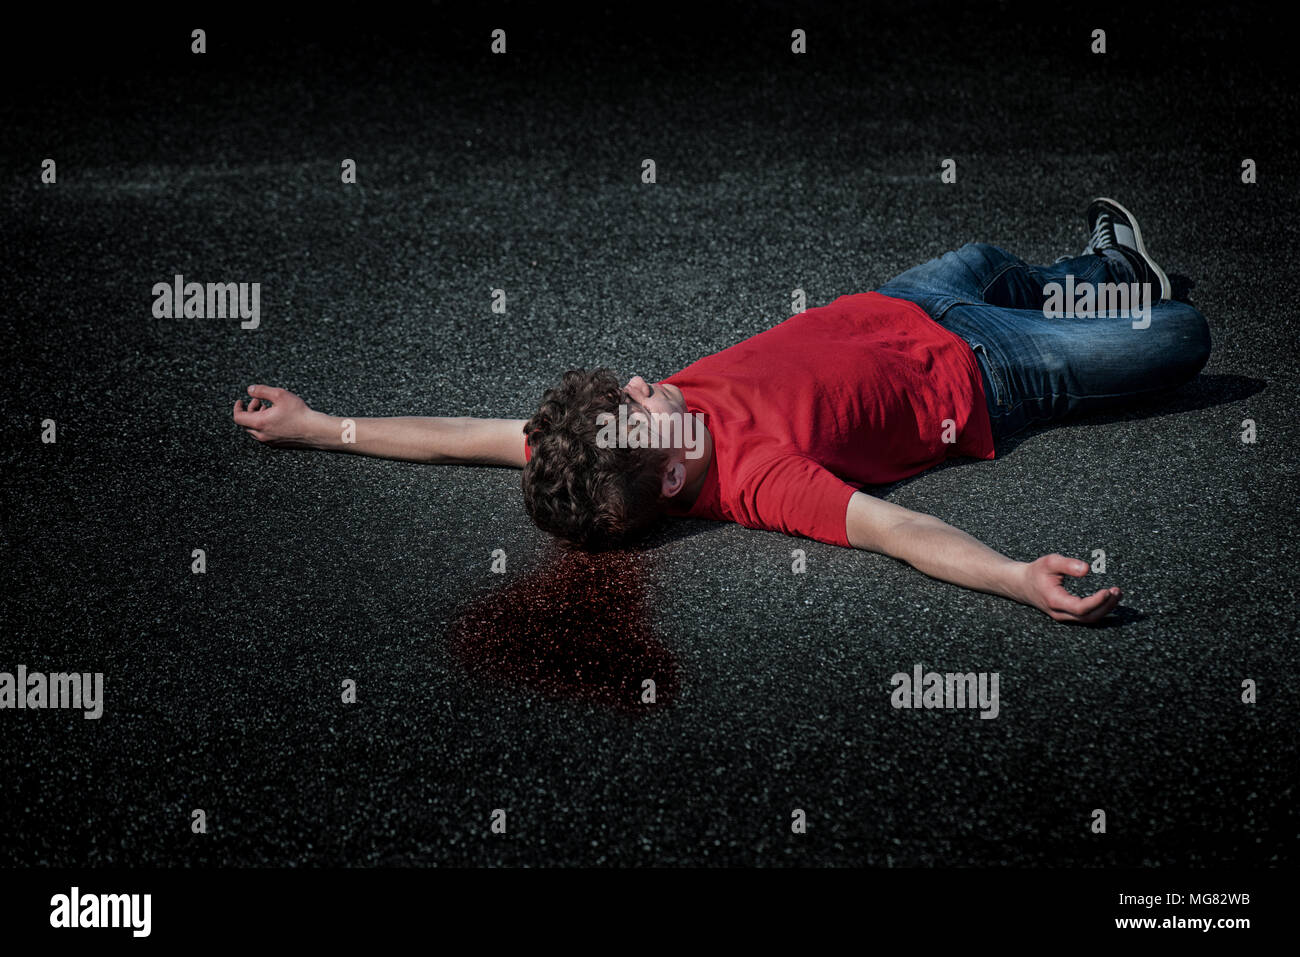 Scena del crimine - dead teen boy corpo nel sangue su asfalto - foto di scena. Il corpo di un giovane childlying sulla strada. Foto Stock